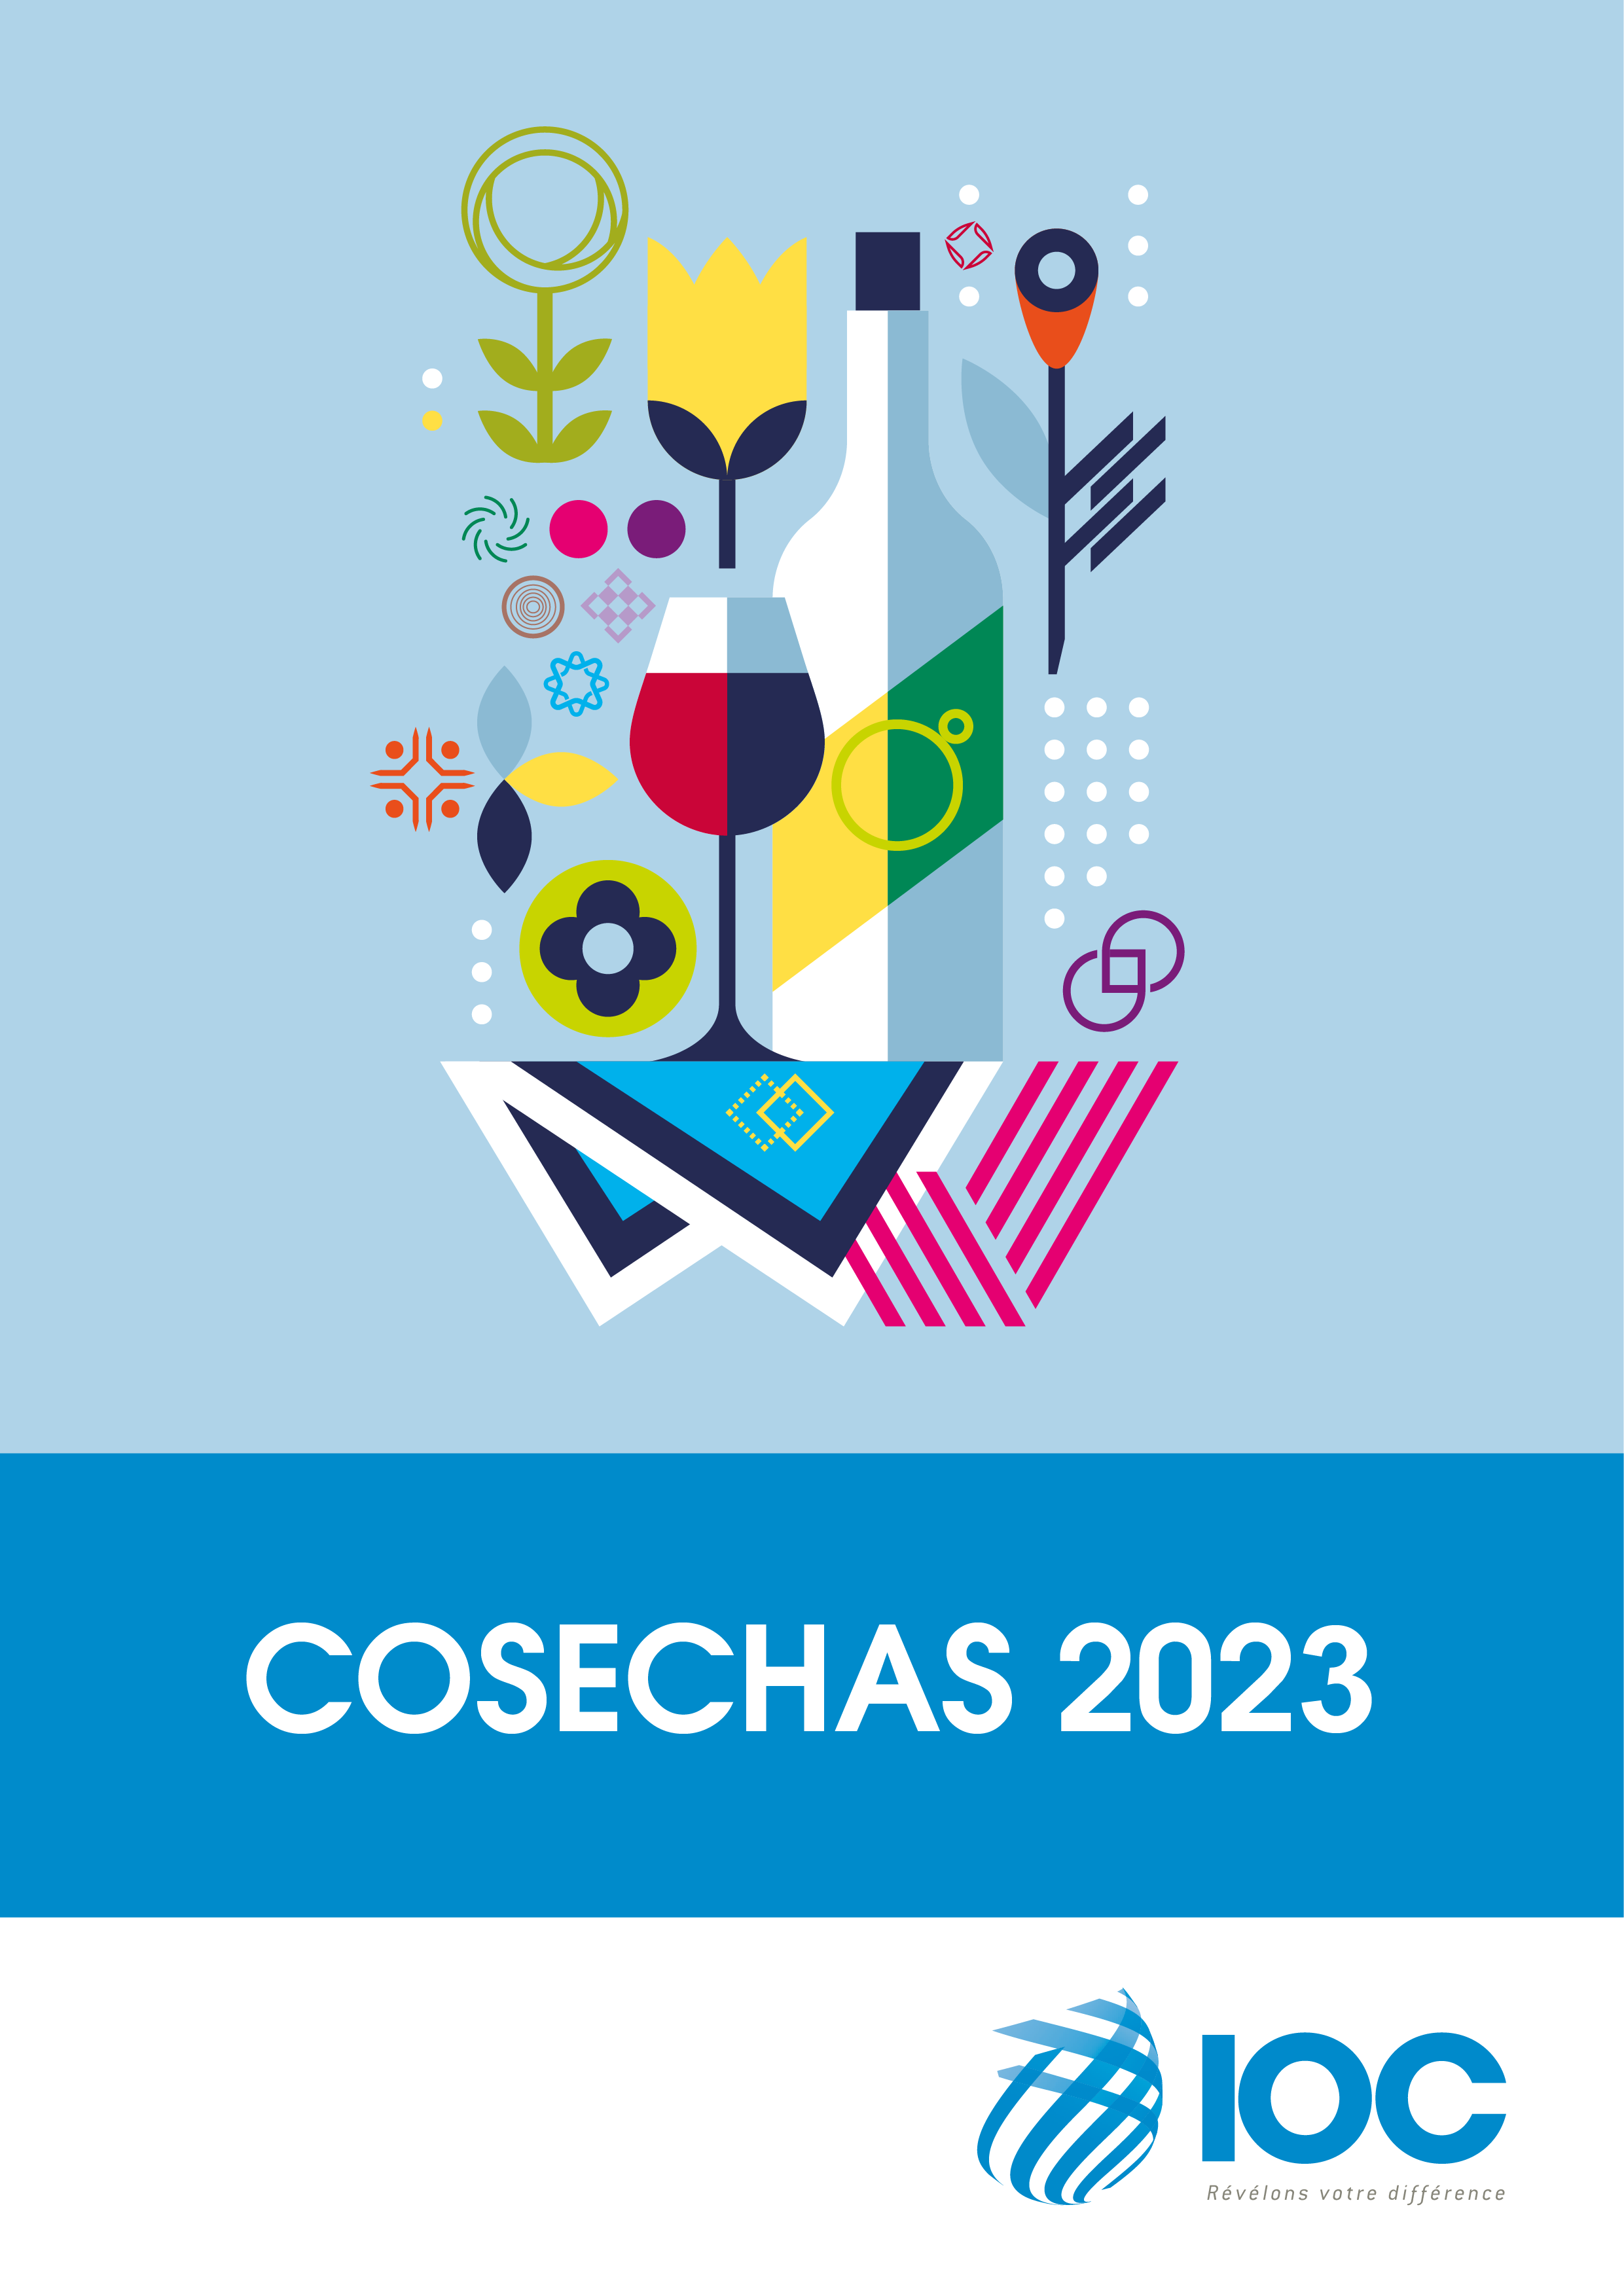 Cosechas 2023